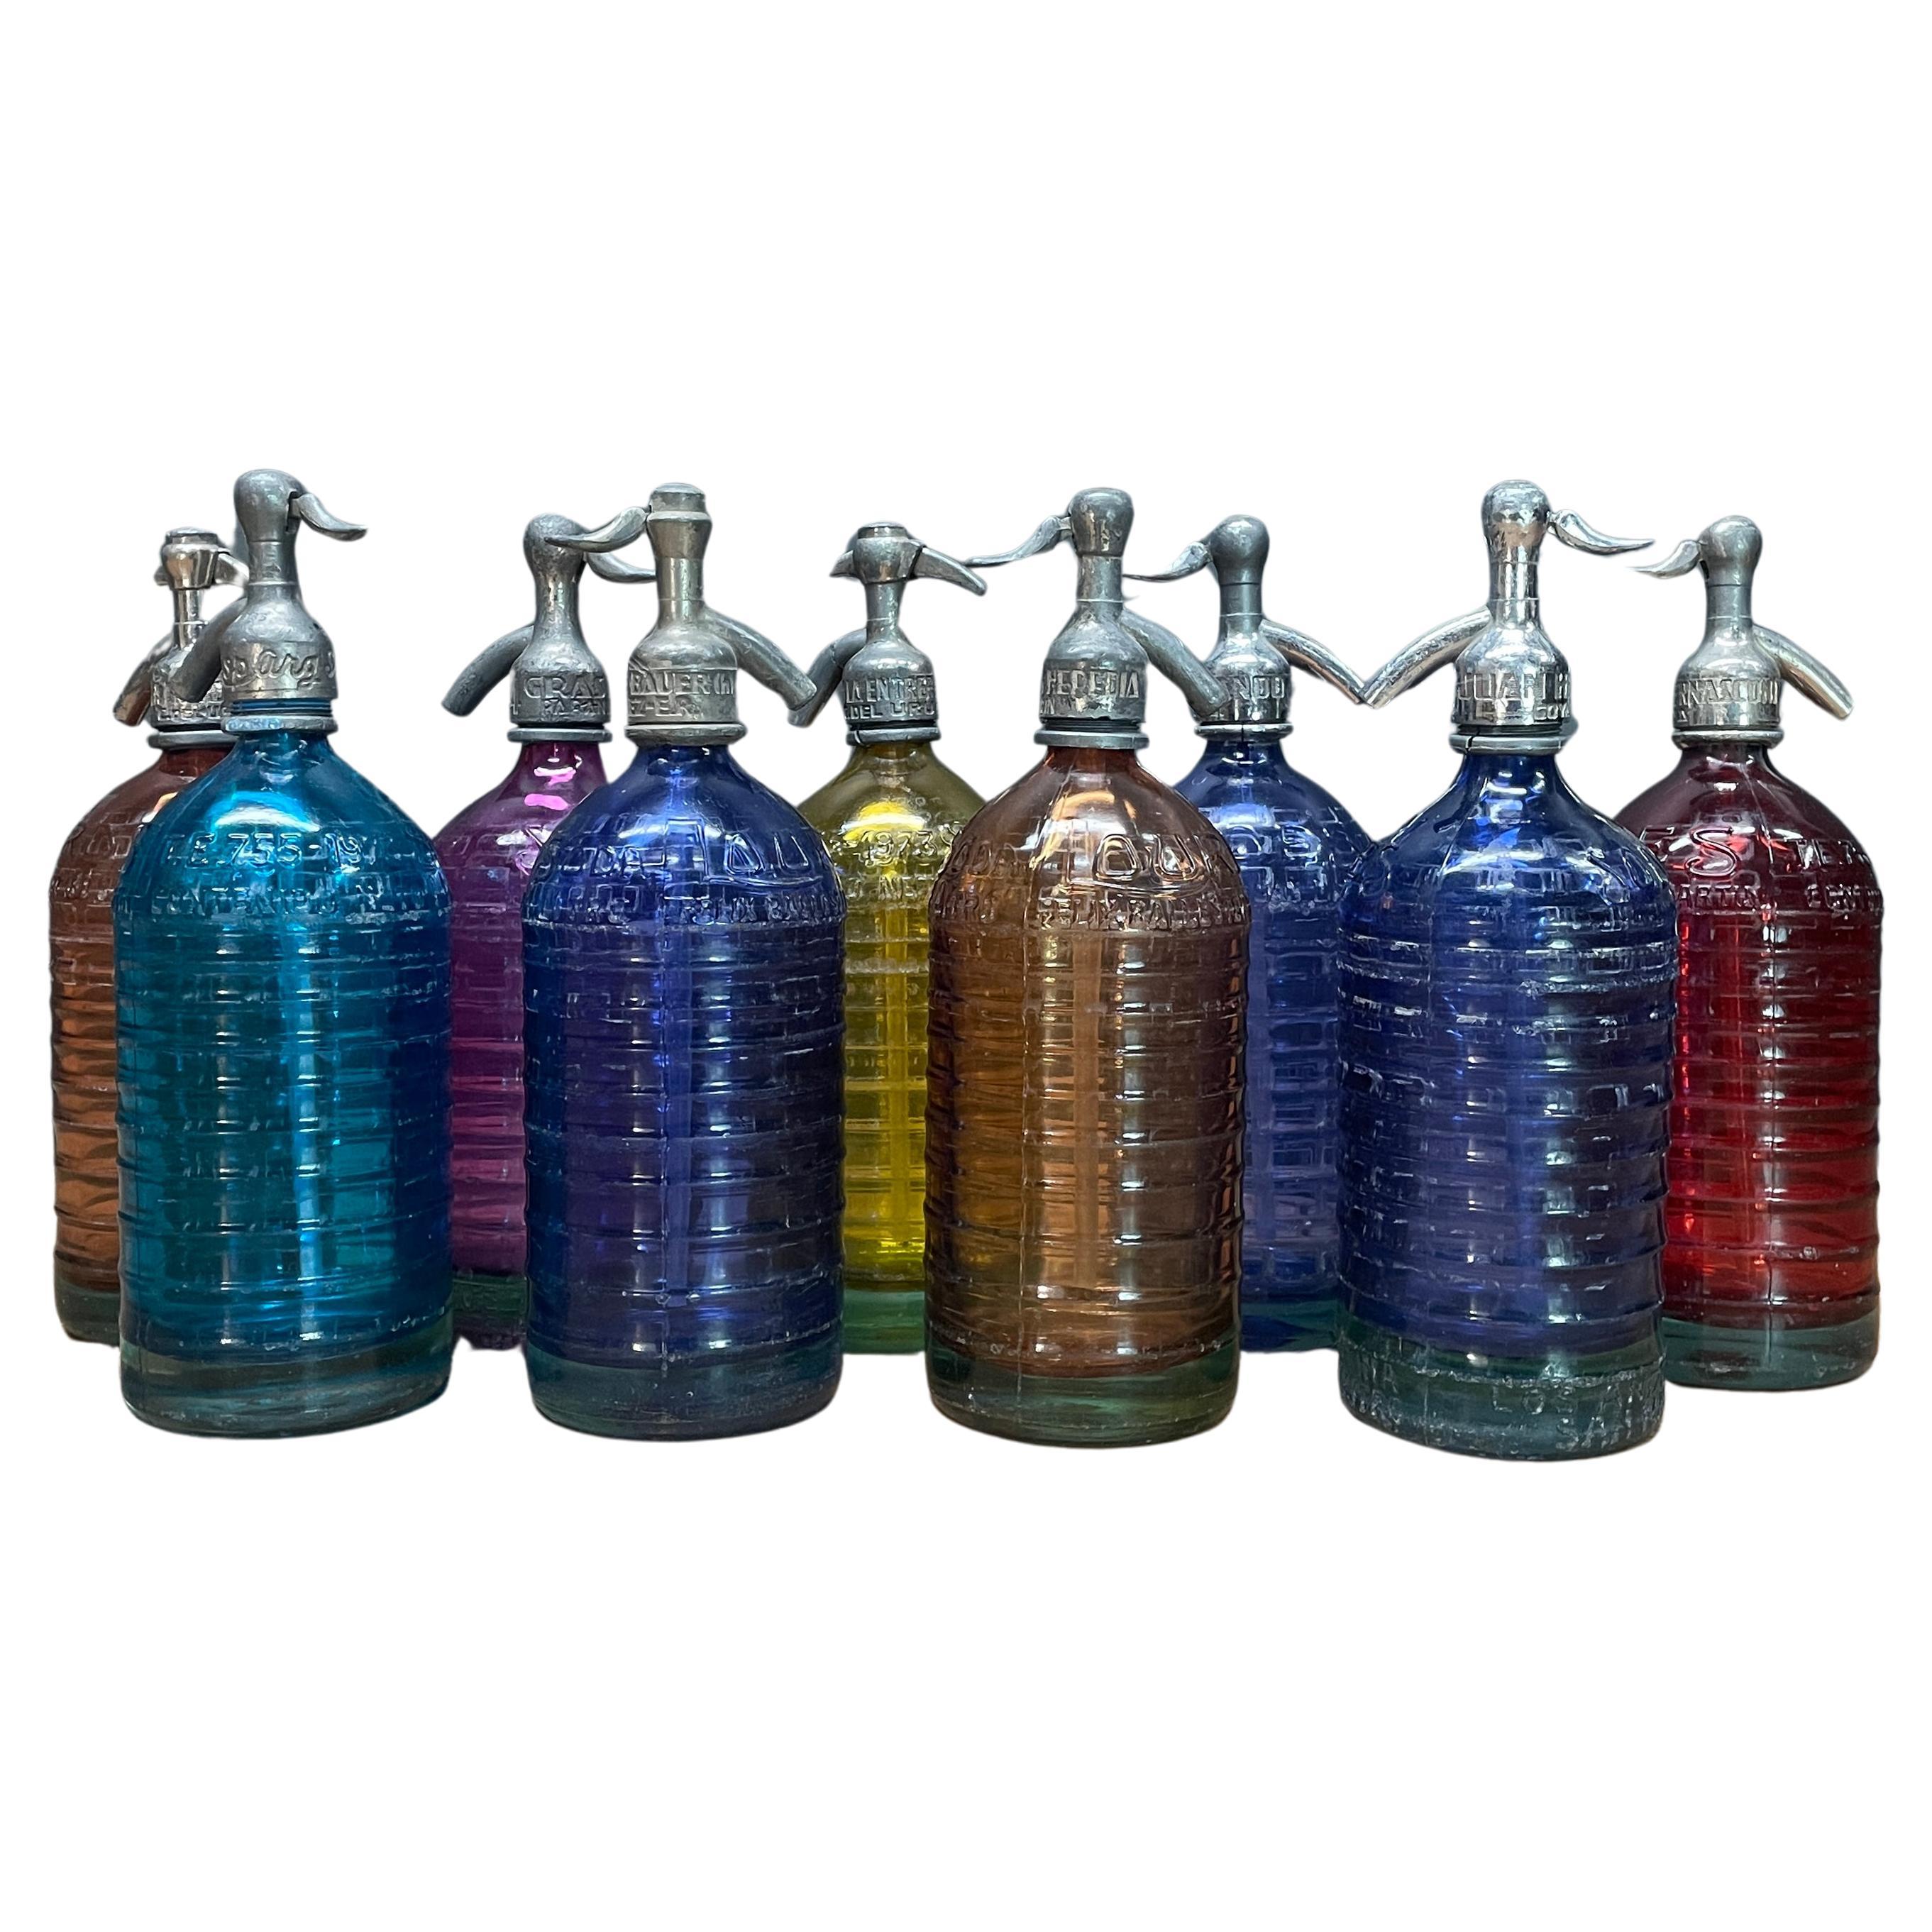 1940s Lourdes Siphon Seltzer Soda Bottle Collection Colorful Glass Vintage Decor For Sale